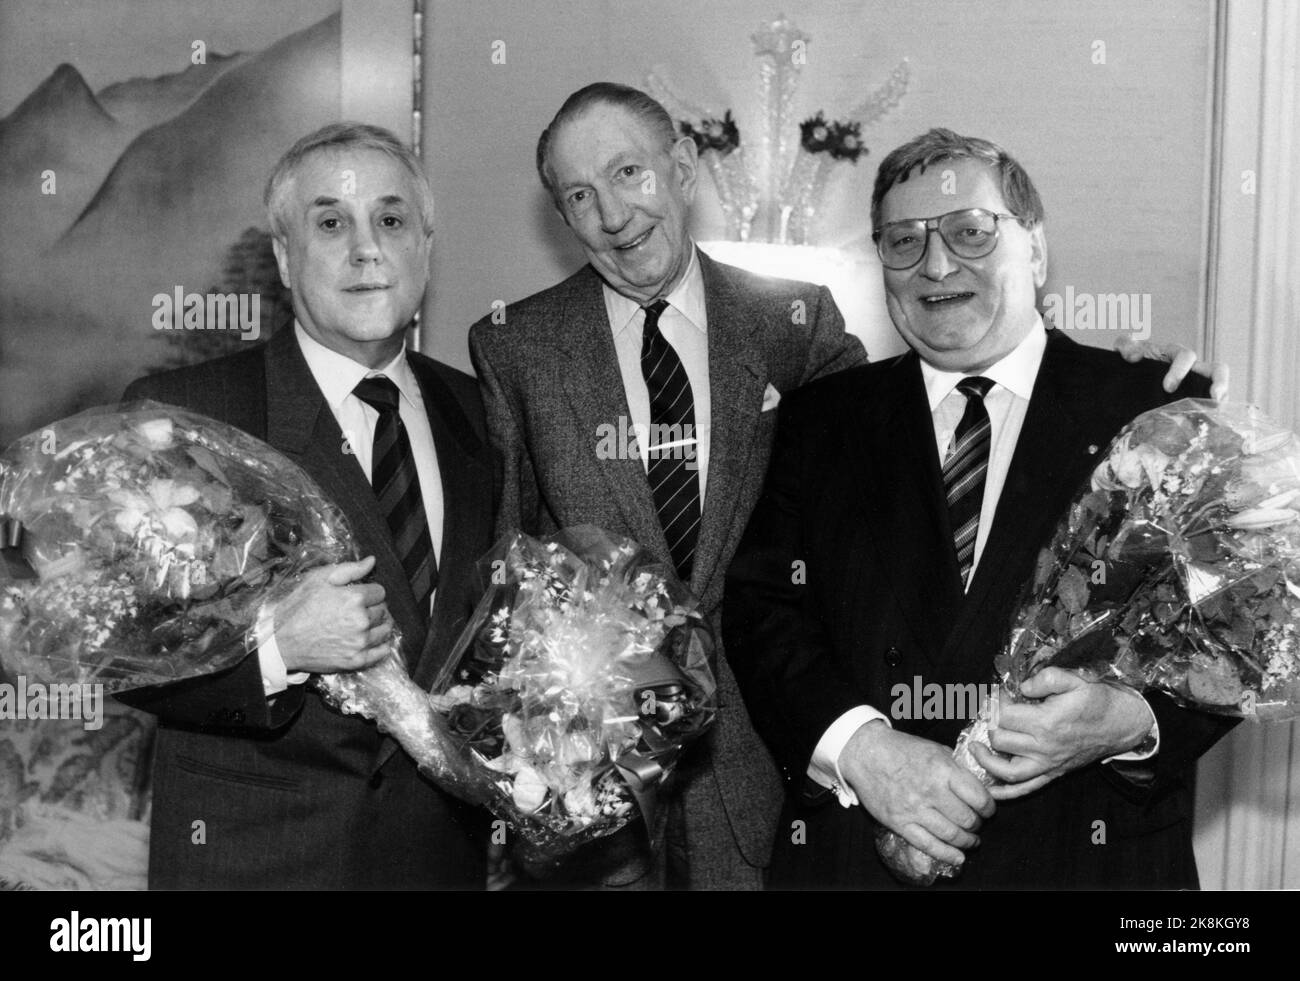 Oslo 19890214: Leif Justers Revyfond wird verteilt. Egel Monn Iversen (TV) und Rolv Wesenlund waren die glücklichen Gewinner der diesjährigen Stipendien aus dem Fonds. Darsteller Leif Juster (in der Mitte) verteilt. Foto: Eystein Hanssen / NTB / NTB Stockfoto